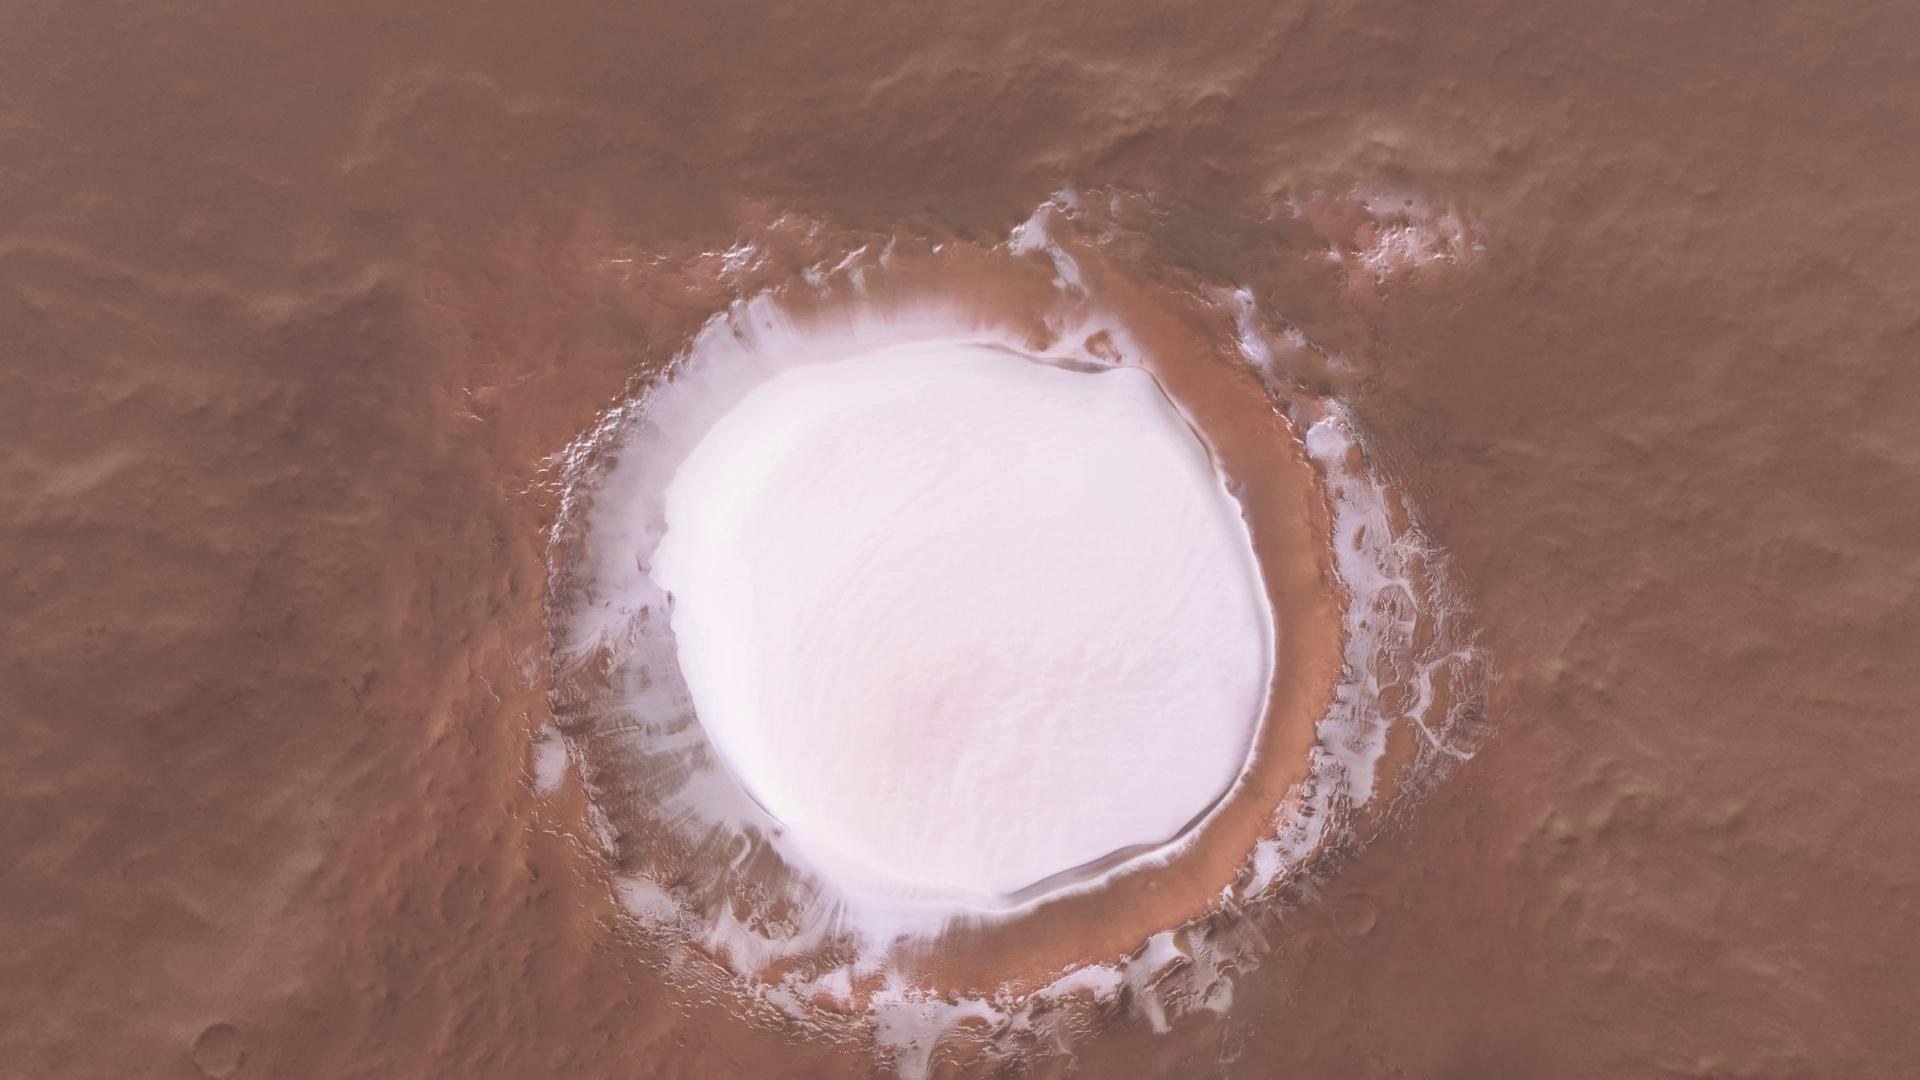 Still animation: Flight over the Korolev crater on Mars